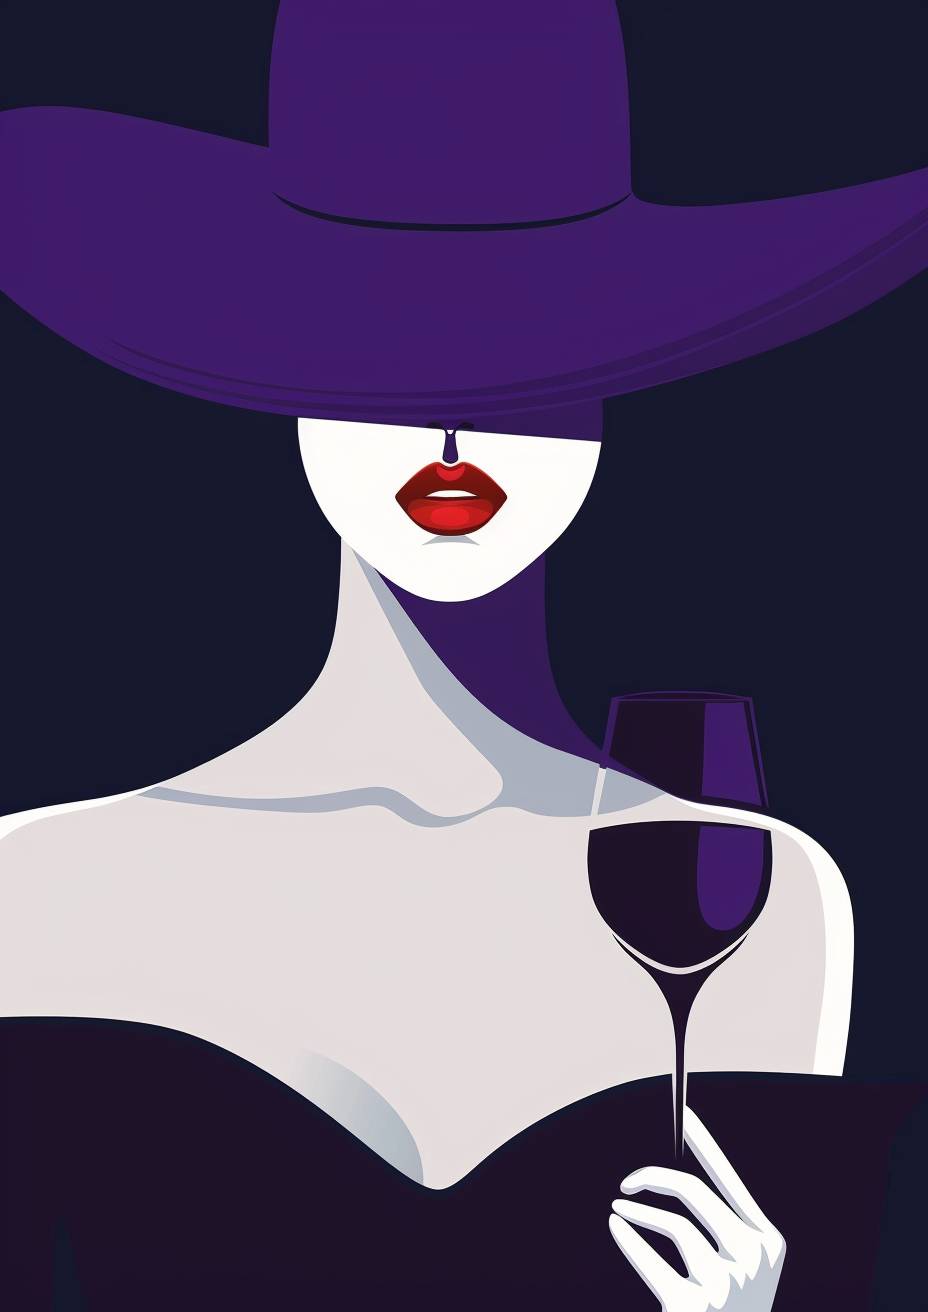 ミニマリストのポスターデザイン。紫の帽子をかぶった神秘な女性、白い肌と赤い唇、黒いドレスを着ています。彼女はワイングラスを持っています。パトリック・ナーゲルのスタイルのミニマリストのベクターイラスト。深い青い背景。きれいな線、大胆な形、洗練されたもの。ヴィンテージファッションポスターに触発されました。高いコントラスト。単色のカラースキーム。大胆な影。濃い海軍の背景に孤立しています。